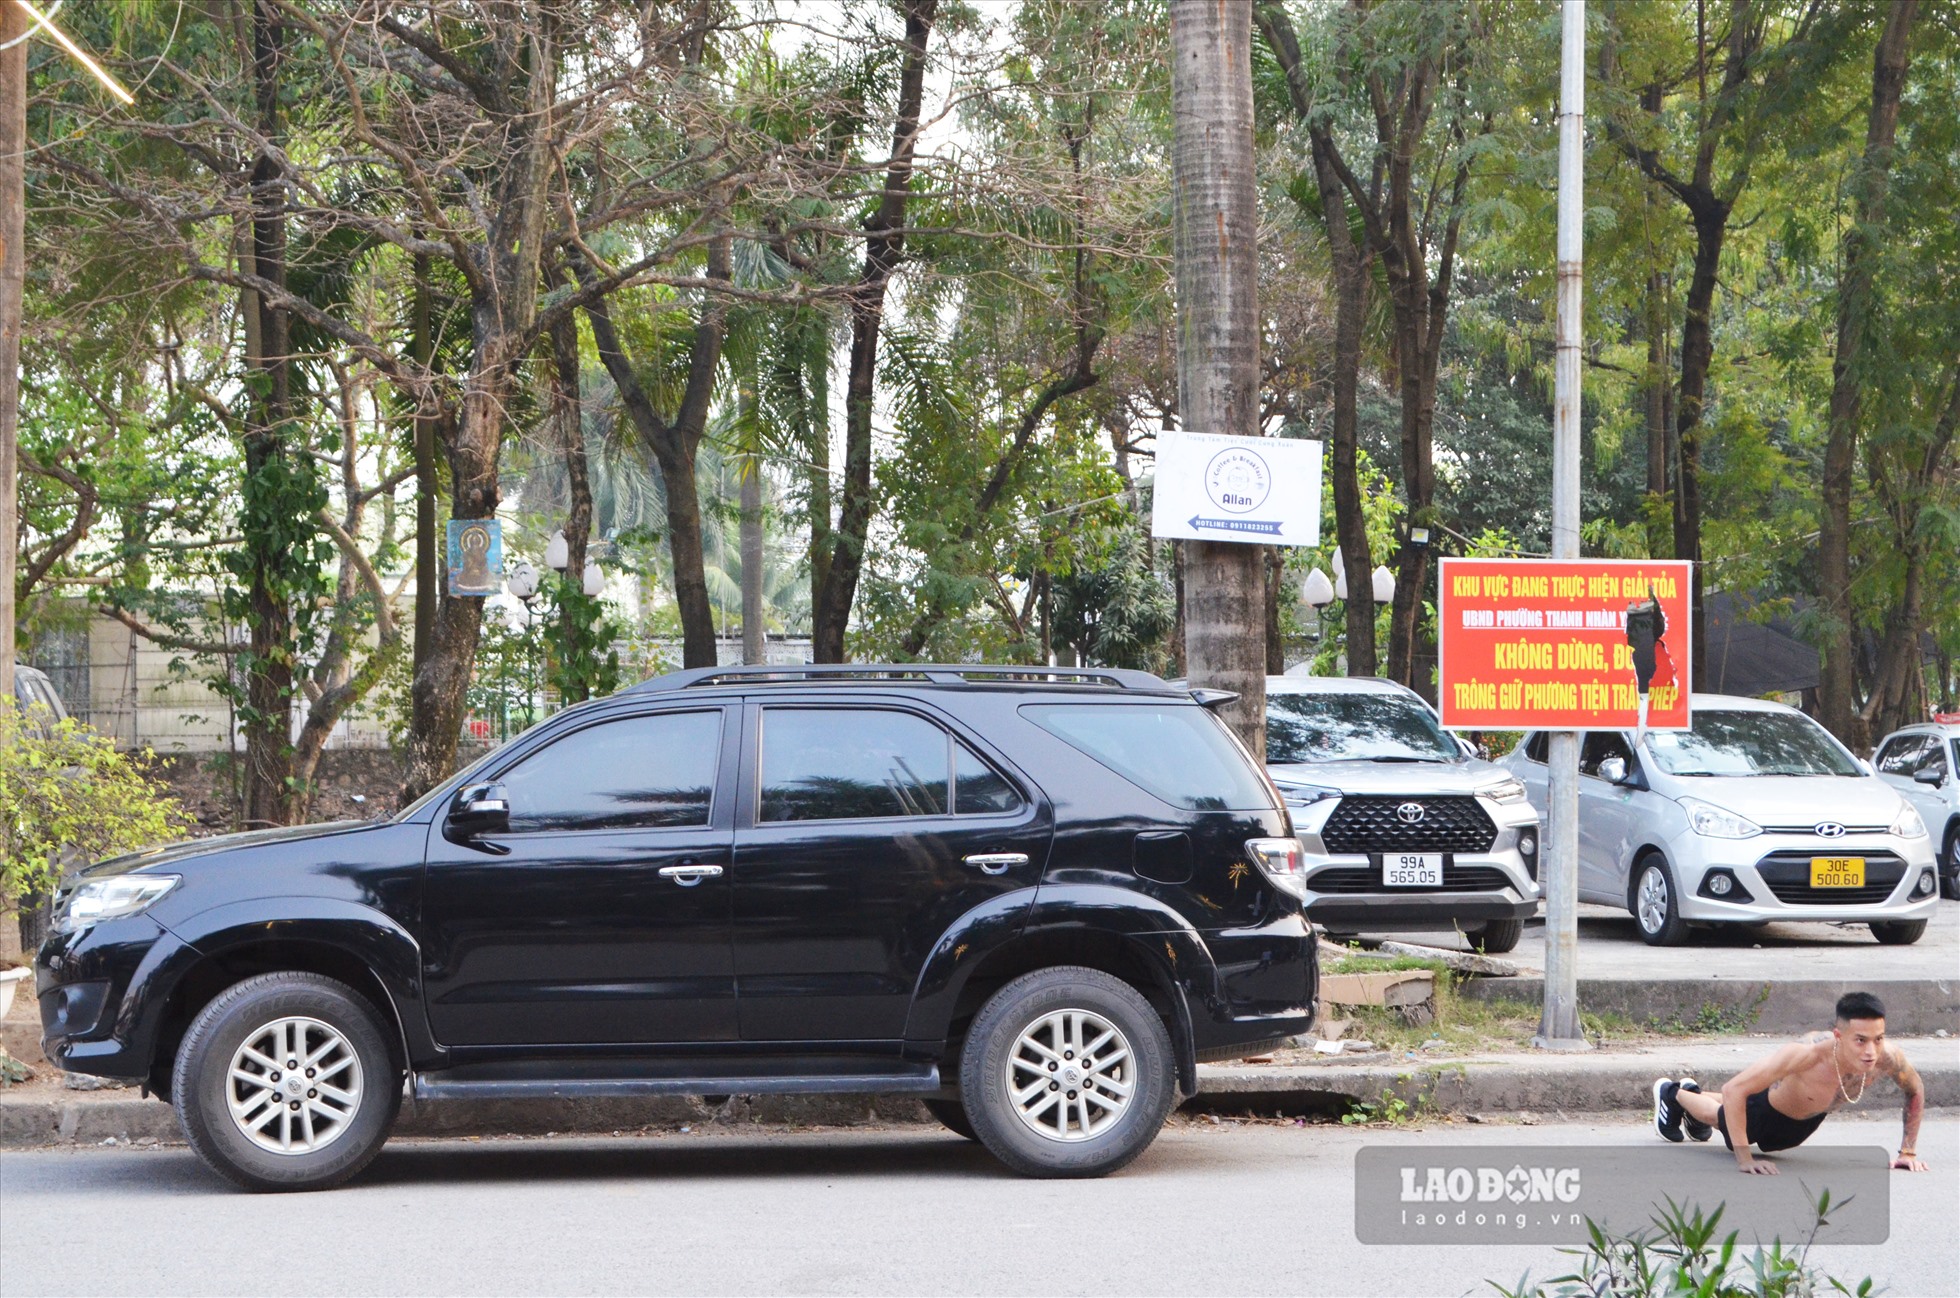 Mặc dù đã có biển cấm của UBND phường Thanh Lương, nhưng nhiều phương tiện ô tô vẫn dừng, đỗ trong công viên.